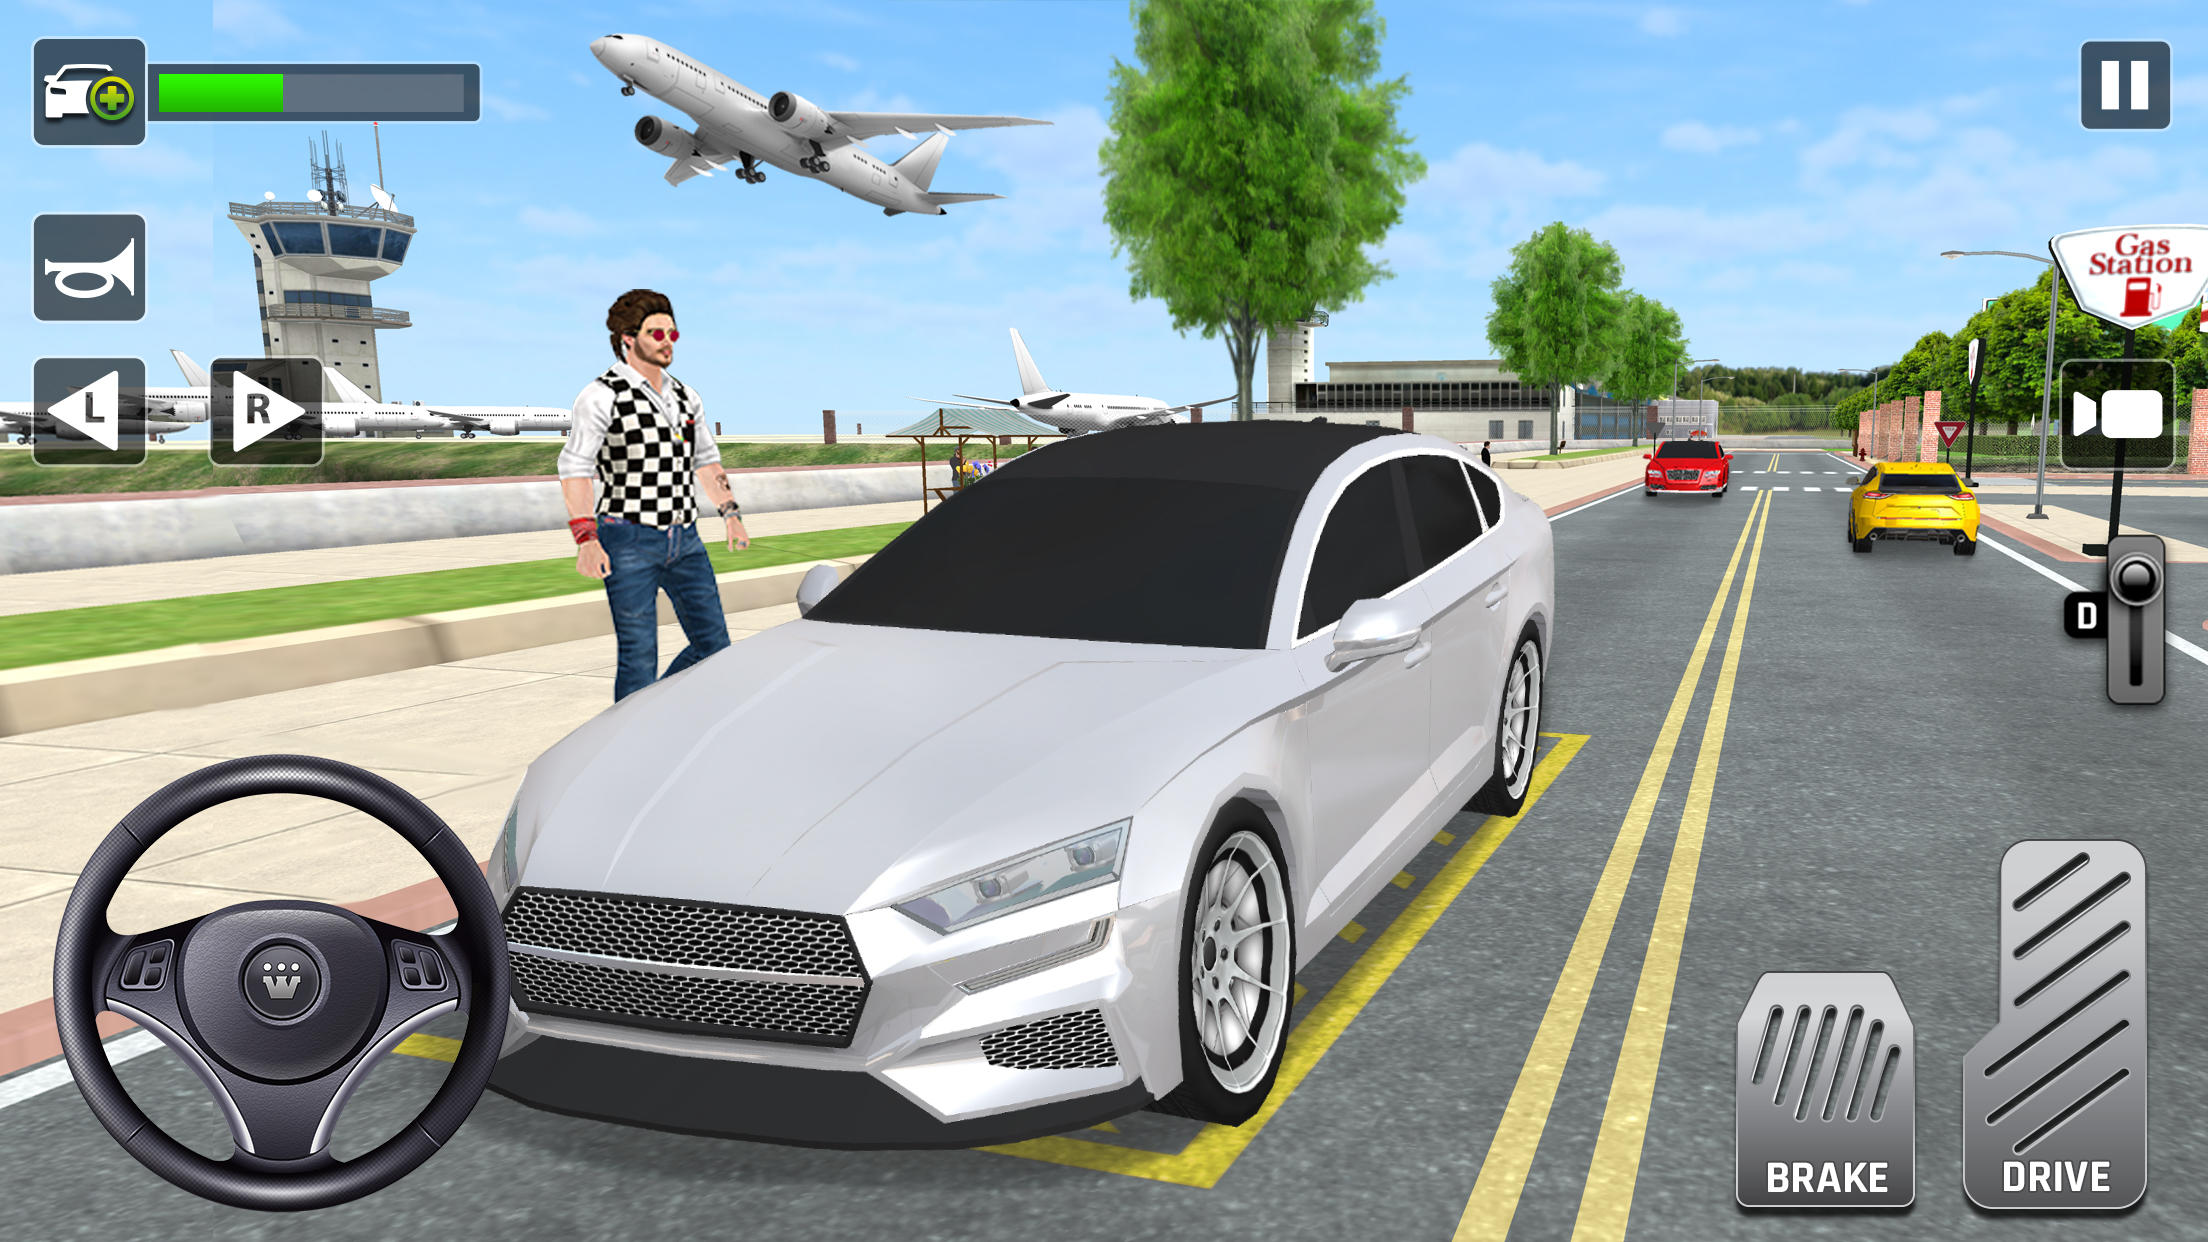 Screenshot 1 of 3D симулятор вождения городского такси 1.9